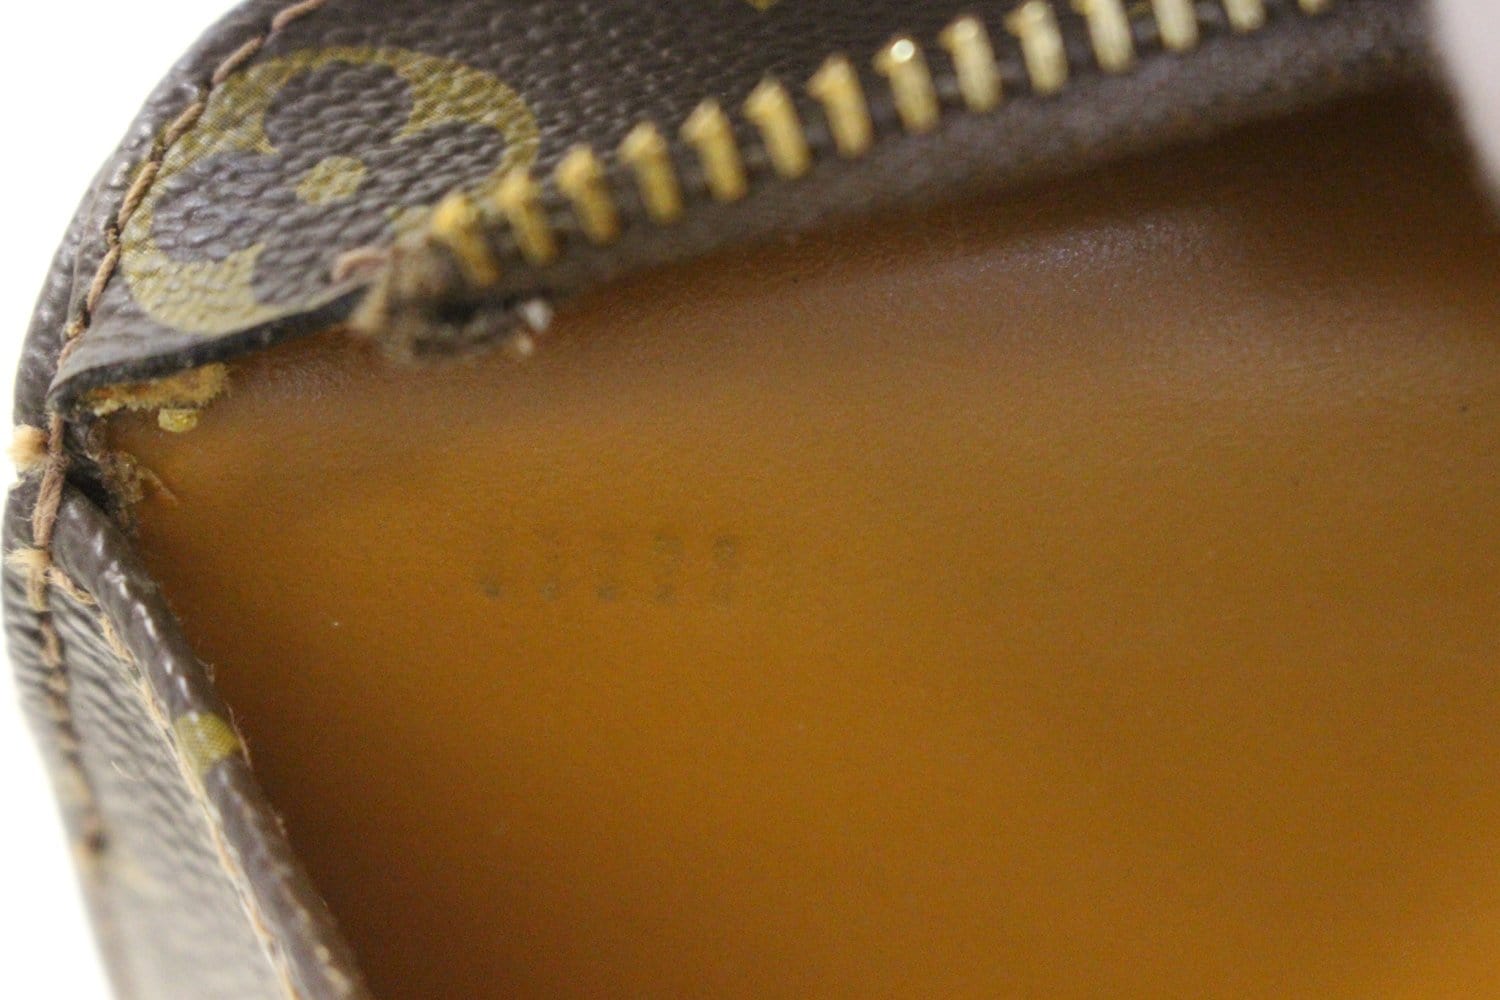 LOUIS VUITTON 'Président' briefcase in brown monogram canvas and leather -  VALOIS VINTAGE PARIS